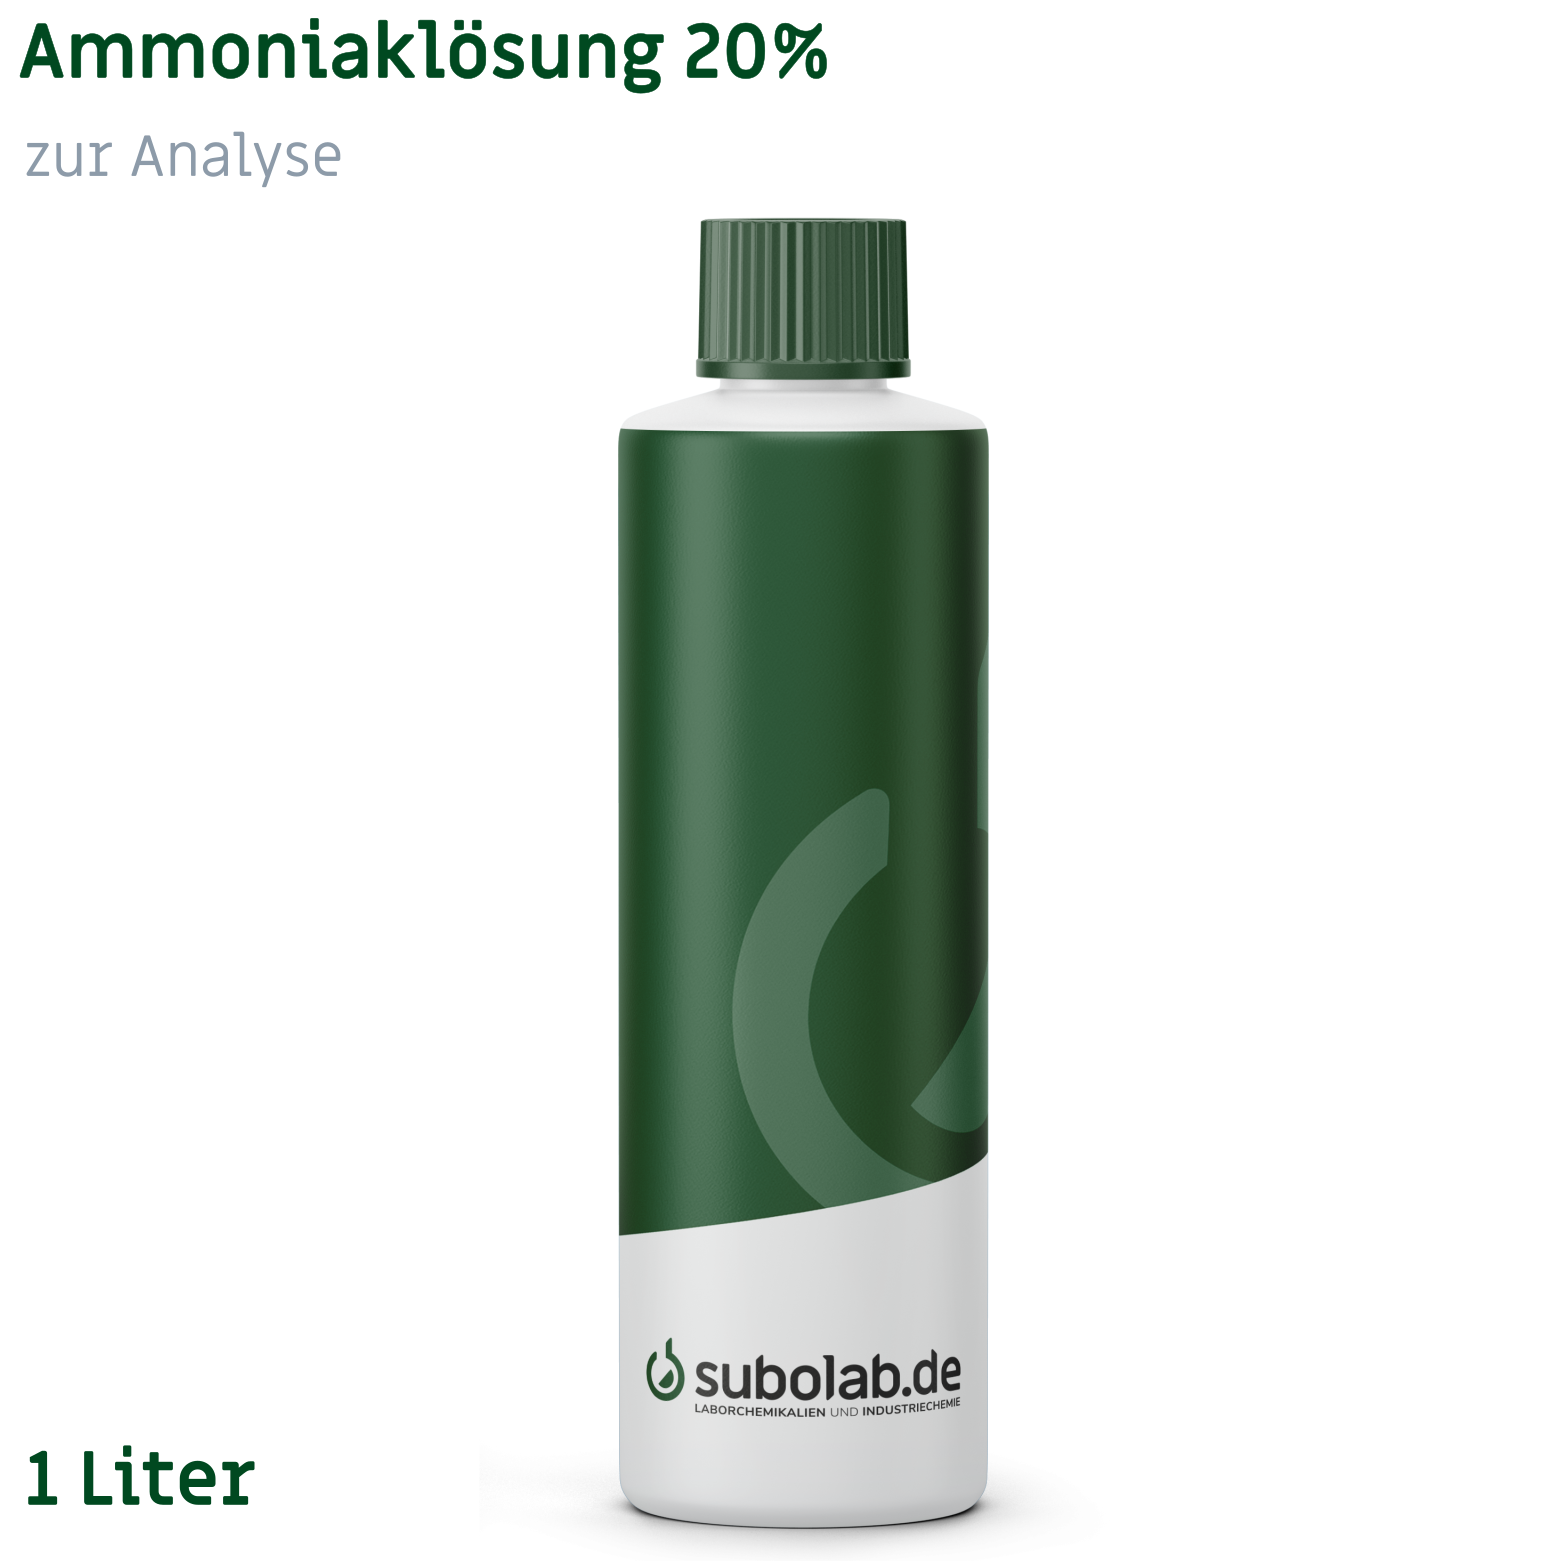 Bild von Ammoniaklösung 20% zur Analyse (1 Liter)